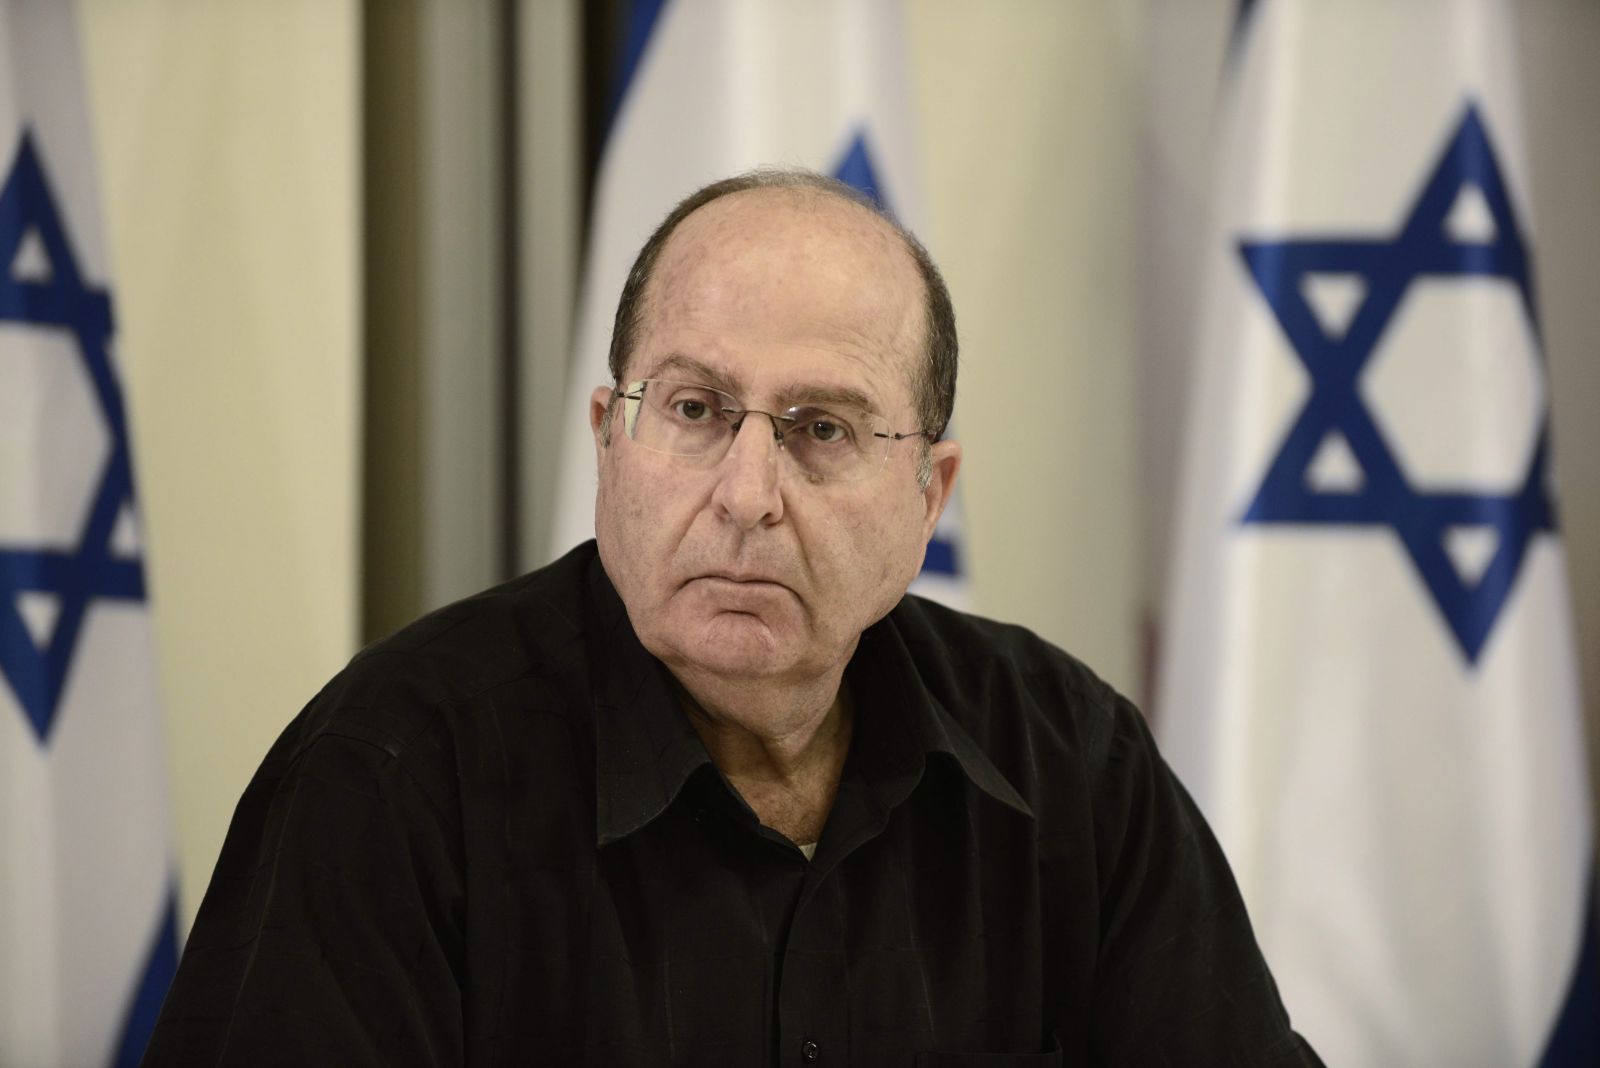   يعالون يؤكد اعتزامه الترشح لرئاسة الحكومة الإسرائيلية